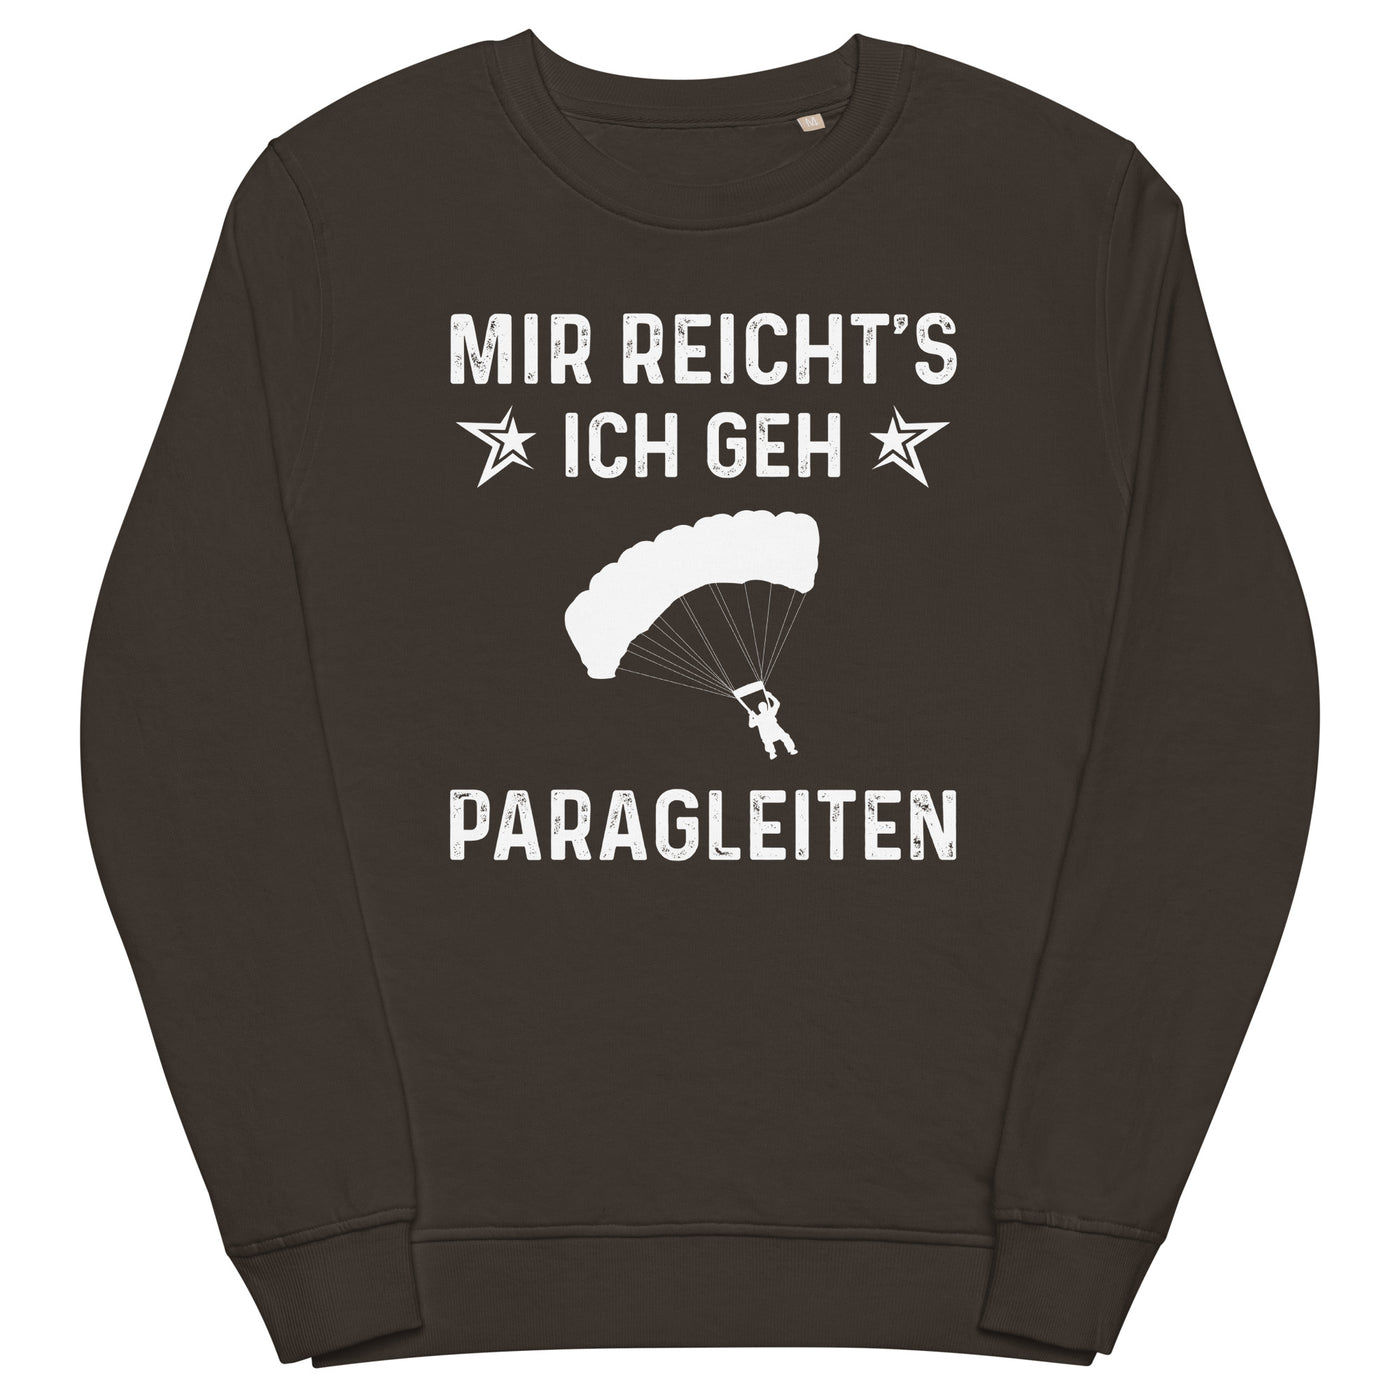 Mir Reicht's Ich Gen Paragleiten - Unisex Premium Organic Sweatshirt berge xxx yyy zzz Deep Charcoal Grey